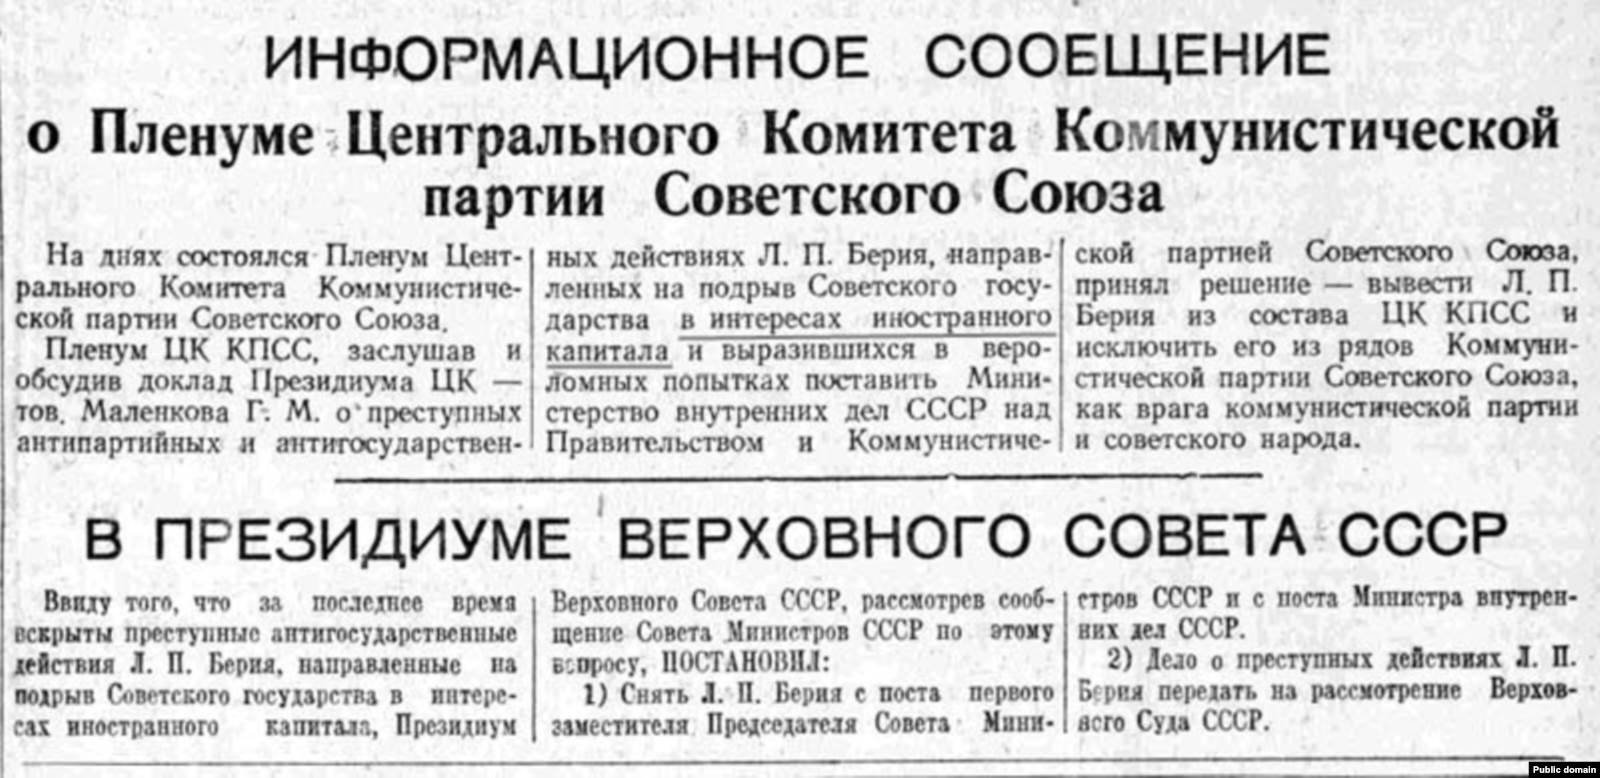 Арест л п берии. Берия в 1953 году. Арест Берии 1953. 26 Июня 1953 года на заседании совета министров СССР был арестован.